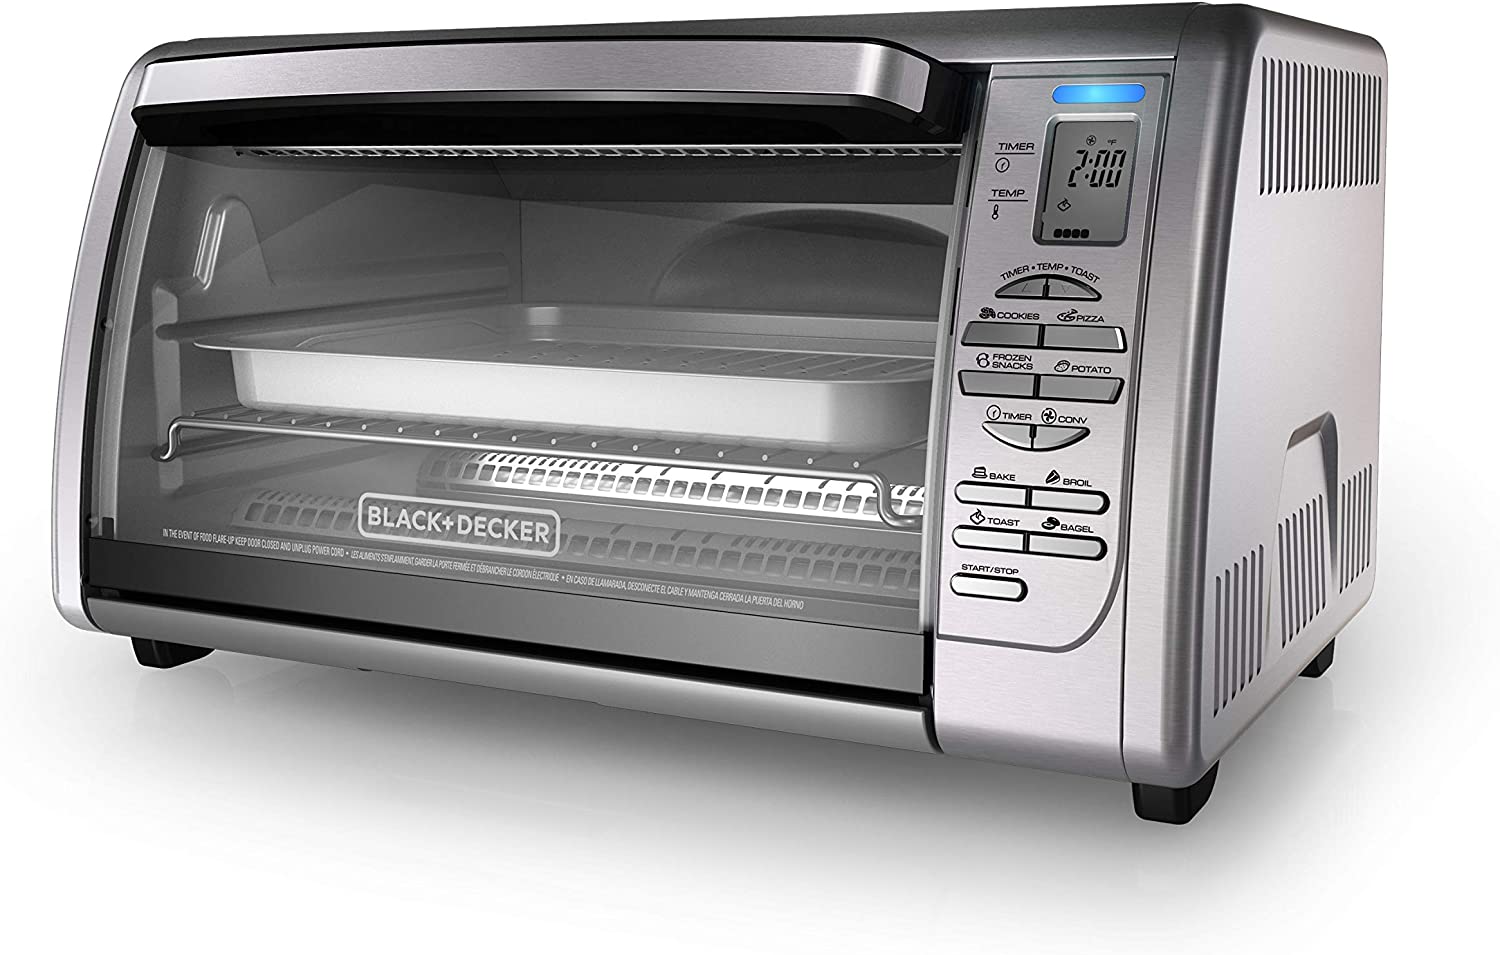 black+decker 02648008504 countertop convection toaster oven